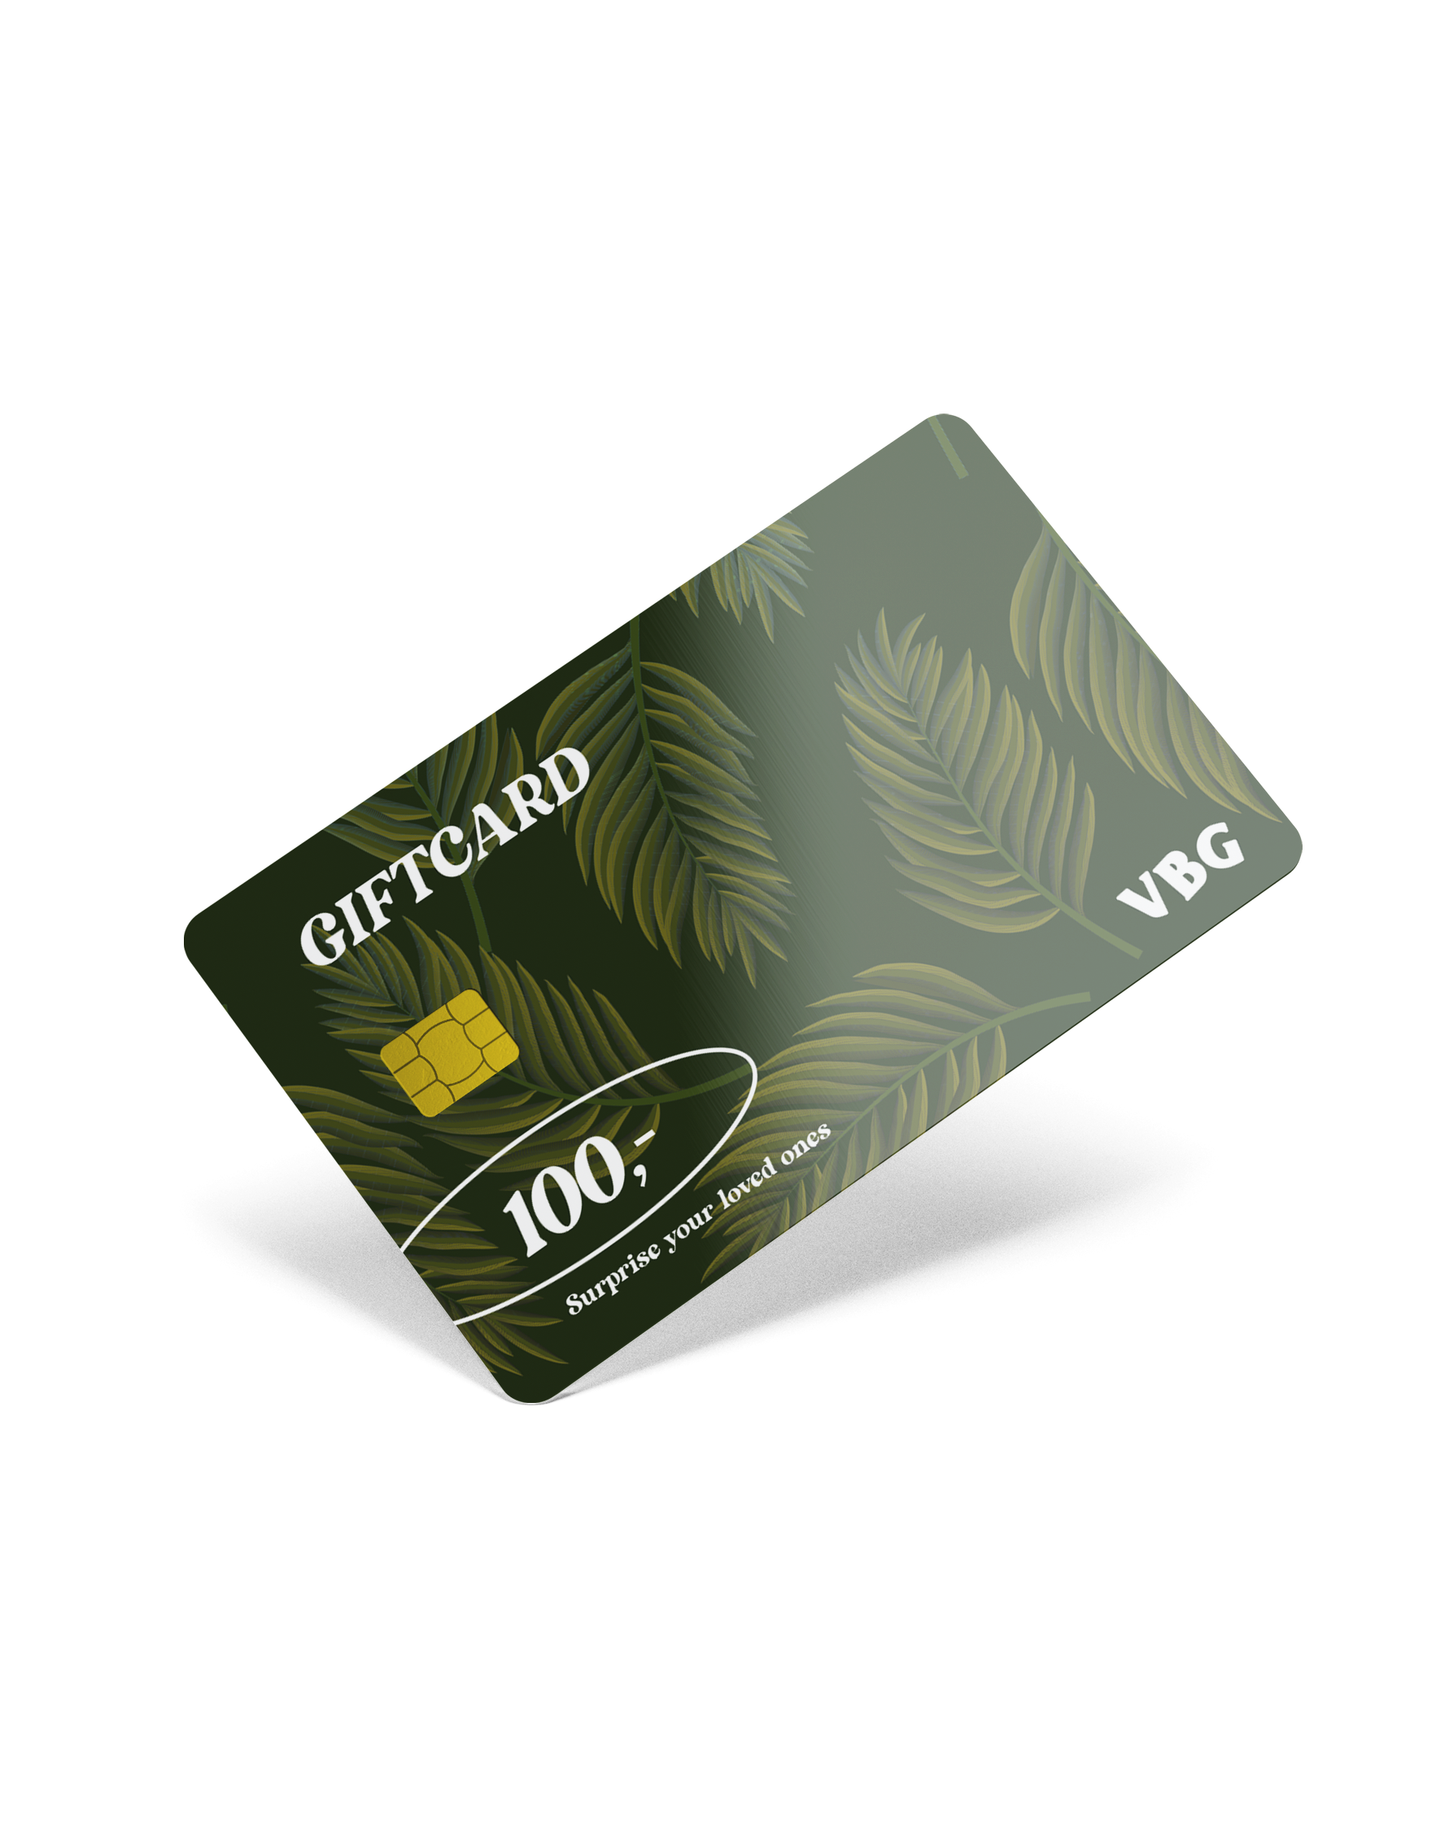 VBG Gift Card - VBG